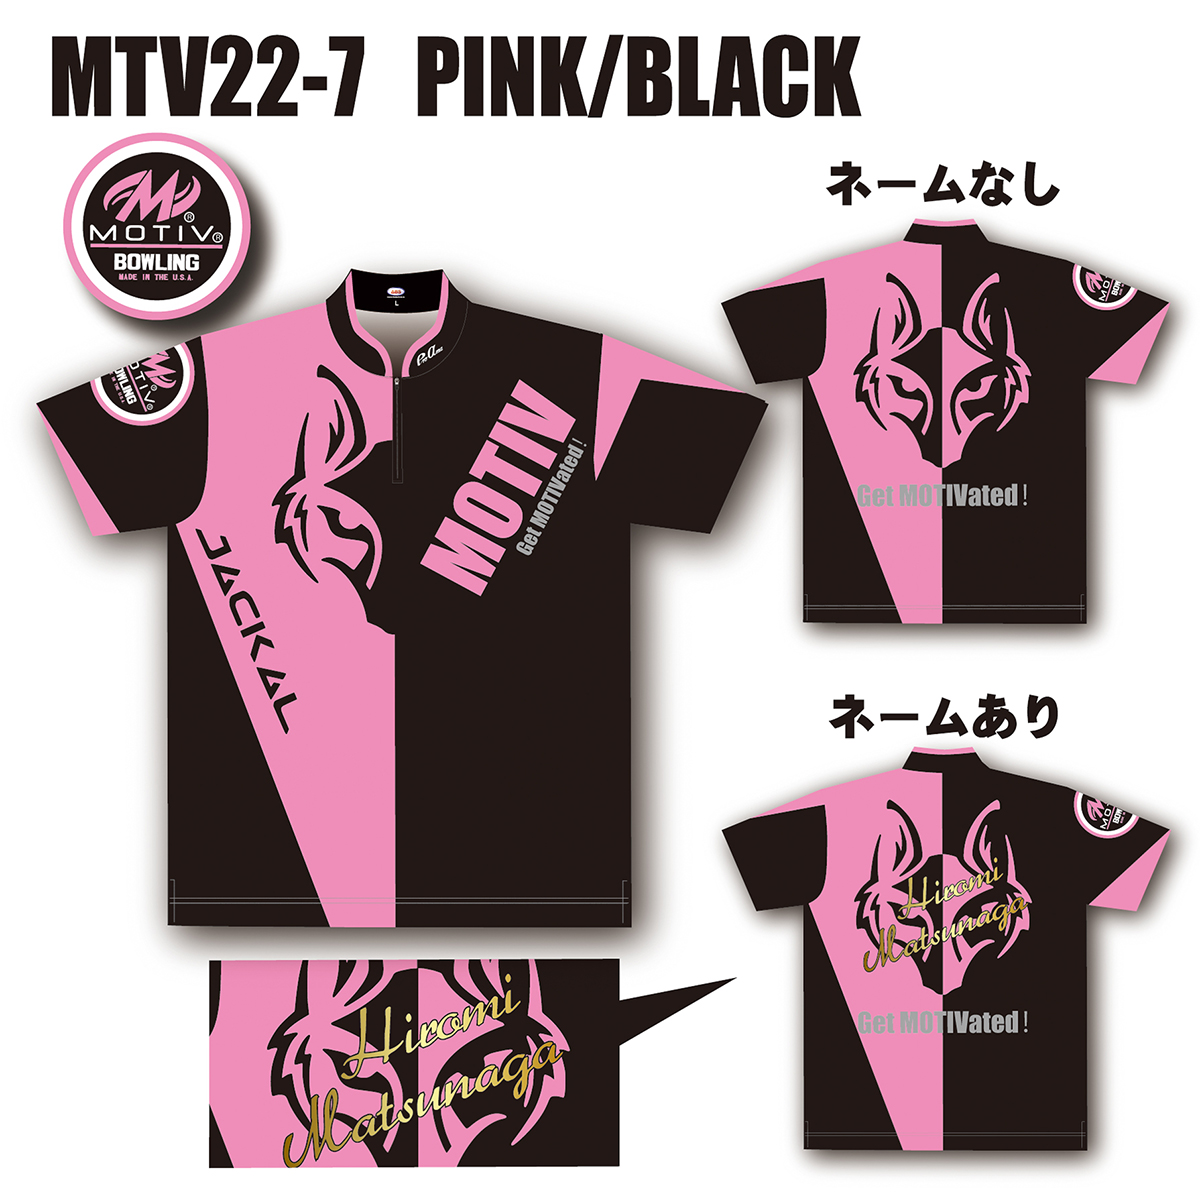 ジャッカルウェア(MTV22-7 PINK/BLACK)